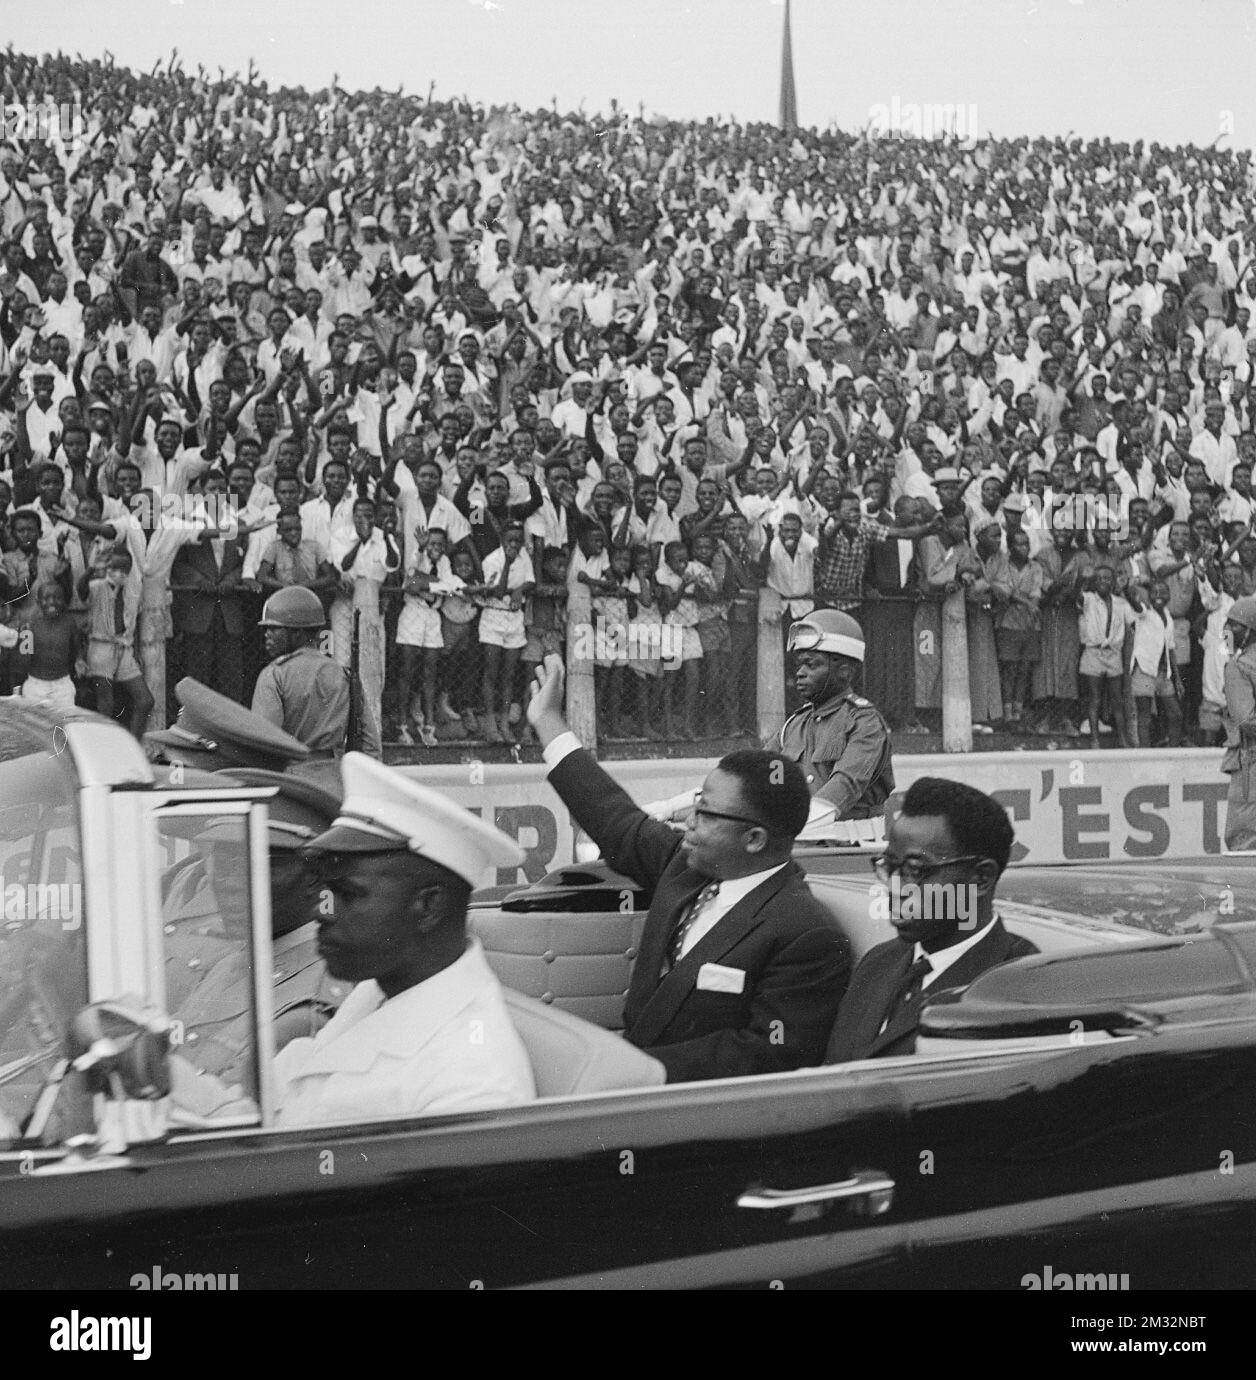 19600630 - LEOPOLDVILLE, CONGO: Joseph Kasa-Vubu, Président de la République du Congo, se défait devant la foule le 1 juillet 1960 à Leopoldville, Congo, un jour après avoir pris ses fonctions de Président. (Archives Belga) Banque D'Images